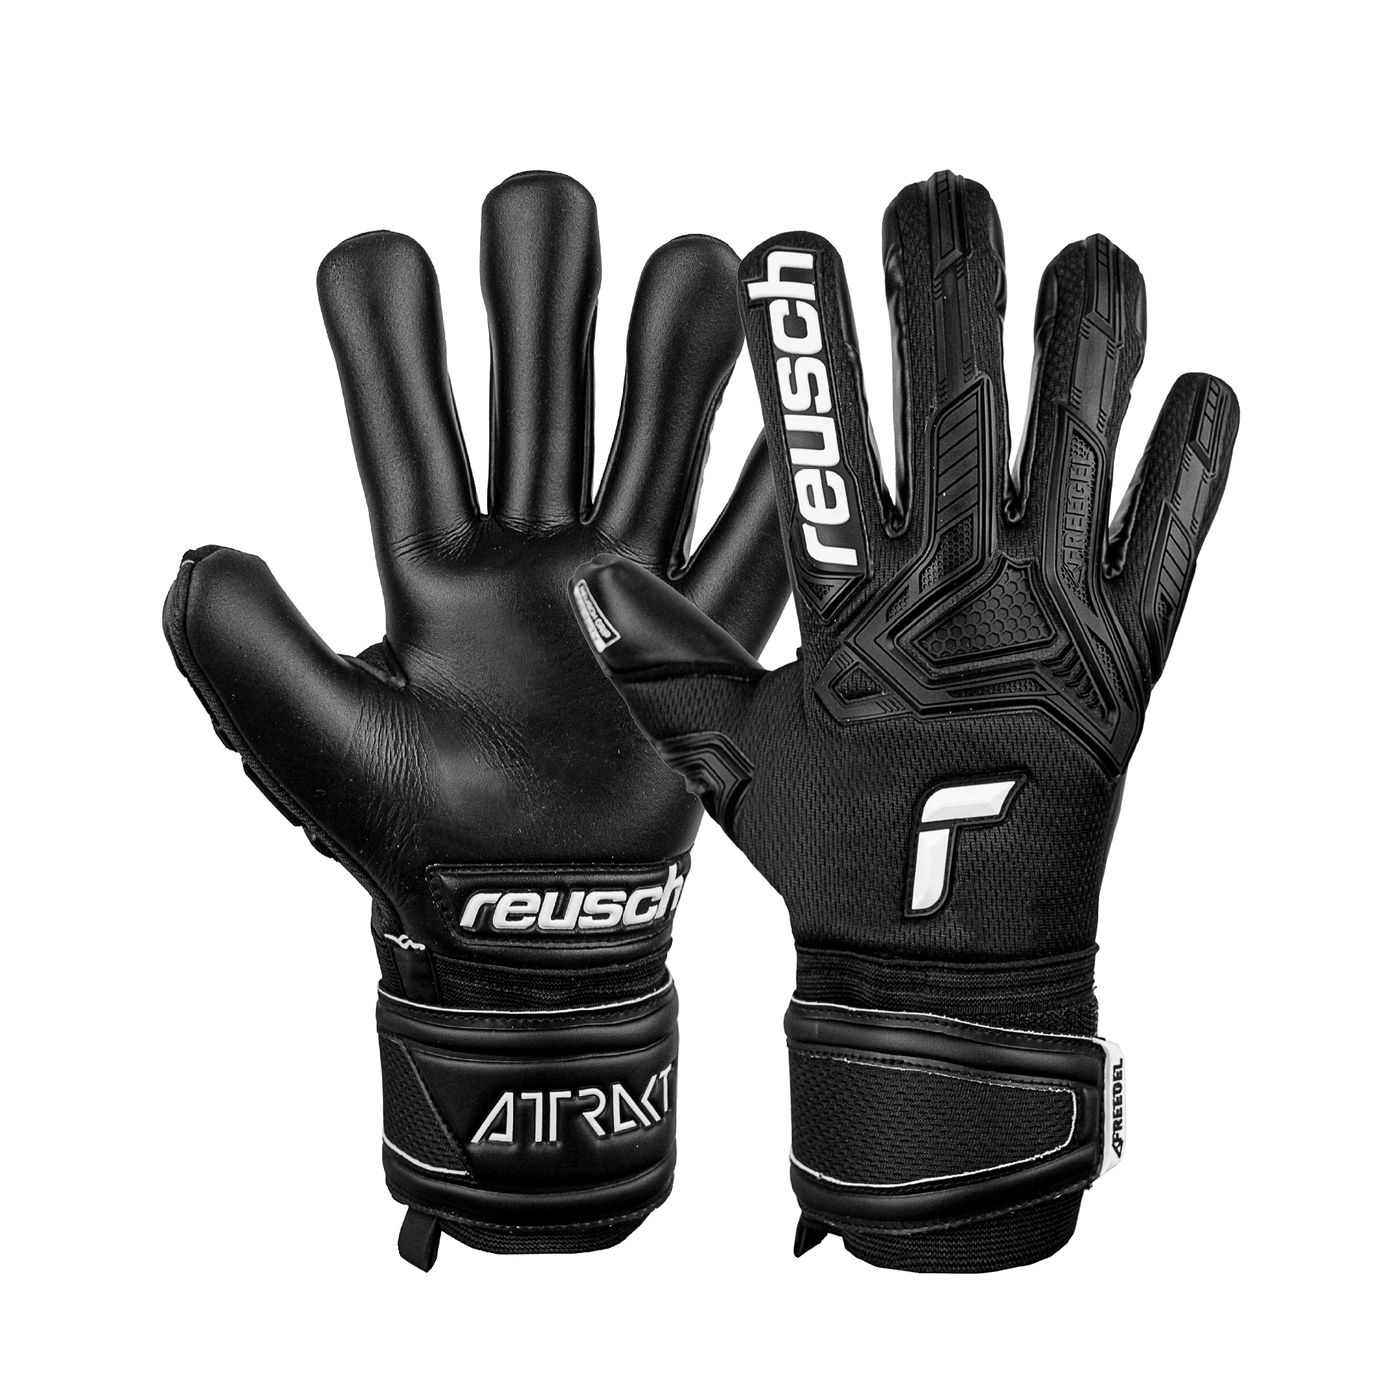 Вратарские перчатки Reusch Attrakt Freegel Infinity Black купить